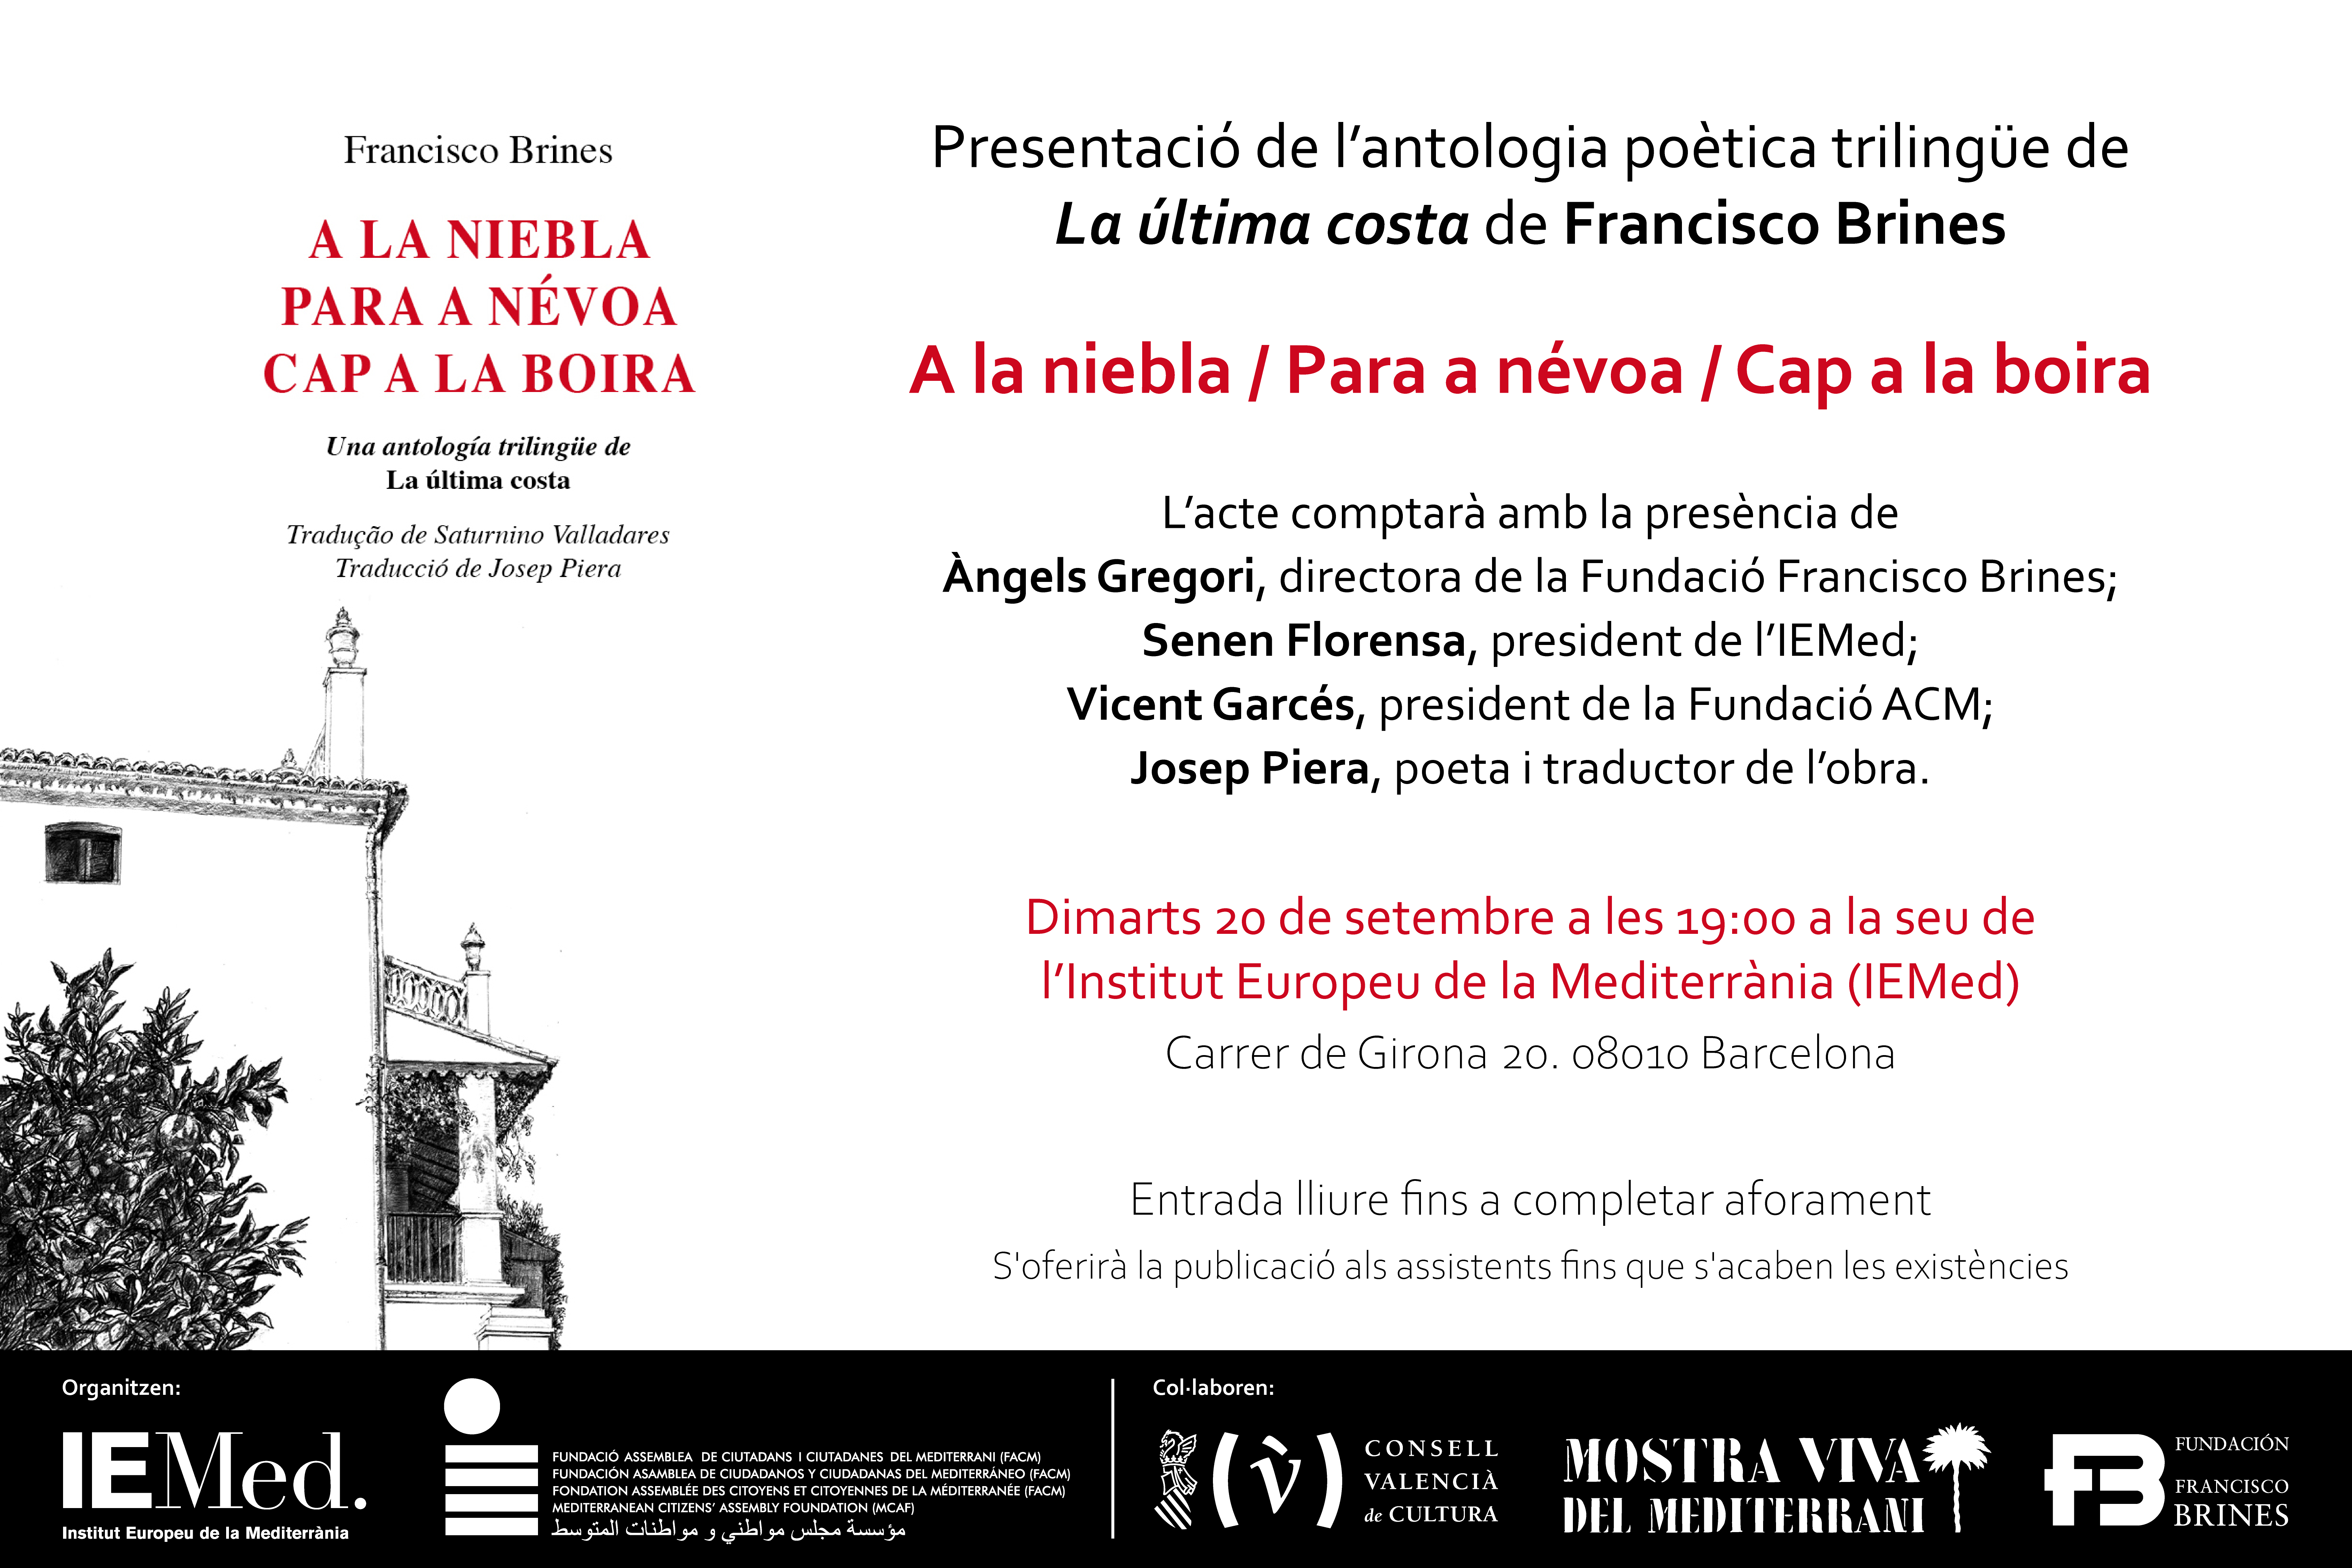 Presentació de l'Antologia Poètica de la Fundació Francisco Brines a l'IEMed